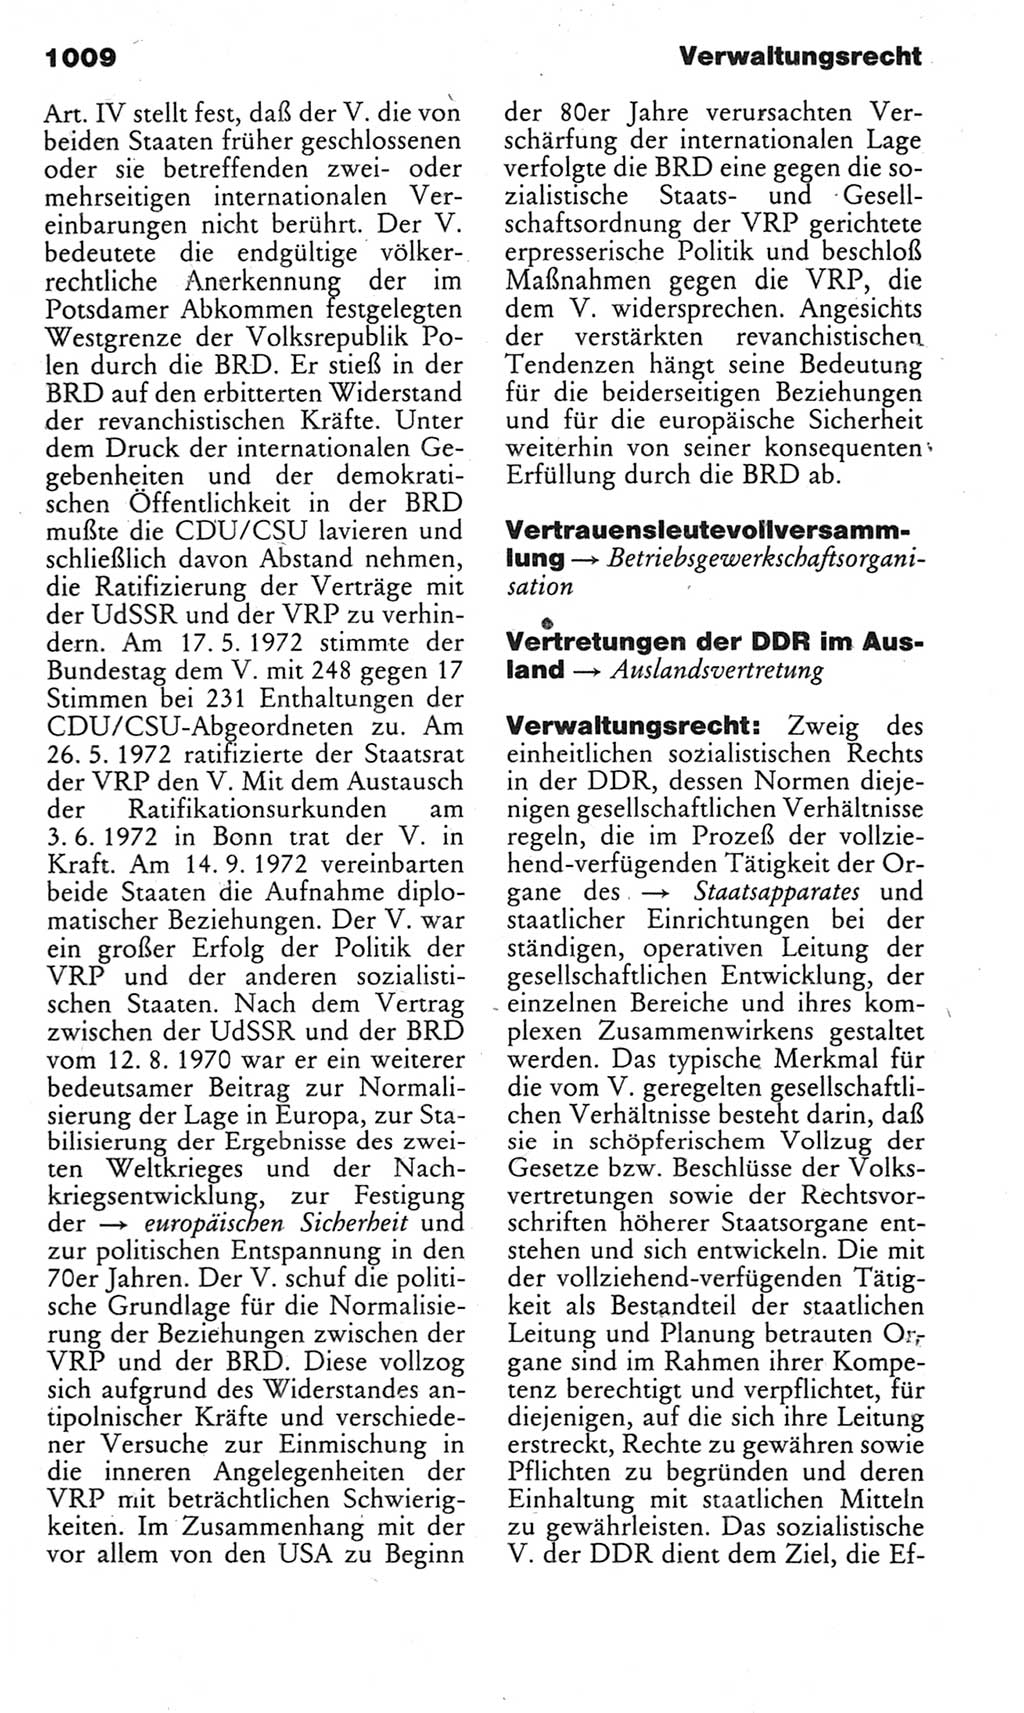 Kleines politisches Wörterbuch [Deutsche Demokratische Republik (DDR)] 1983, Seite 1009 (Kl. pol. Wb. DDR 1983, S. 1009)